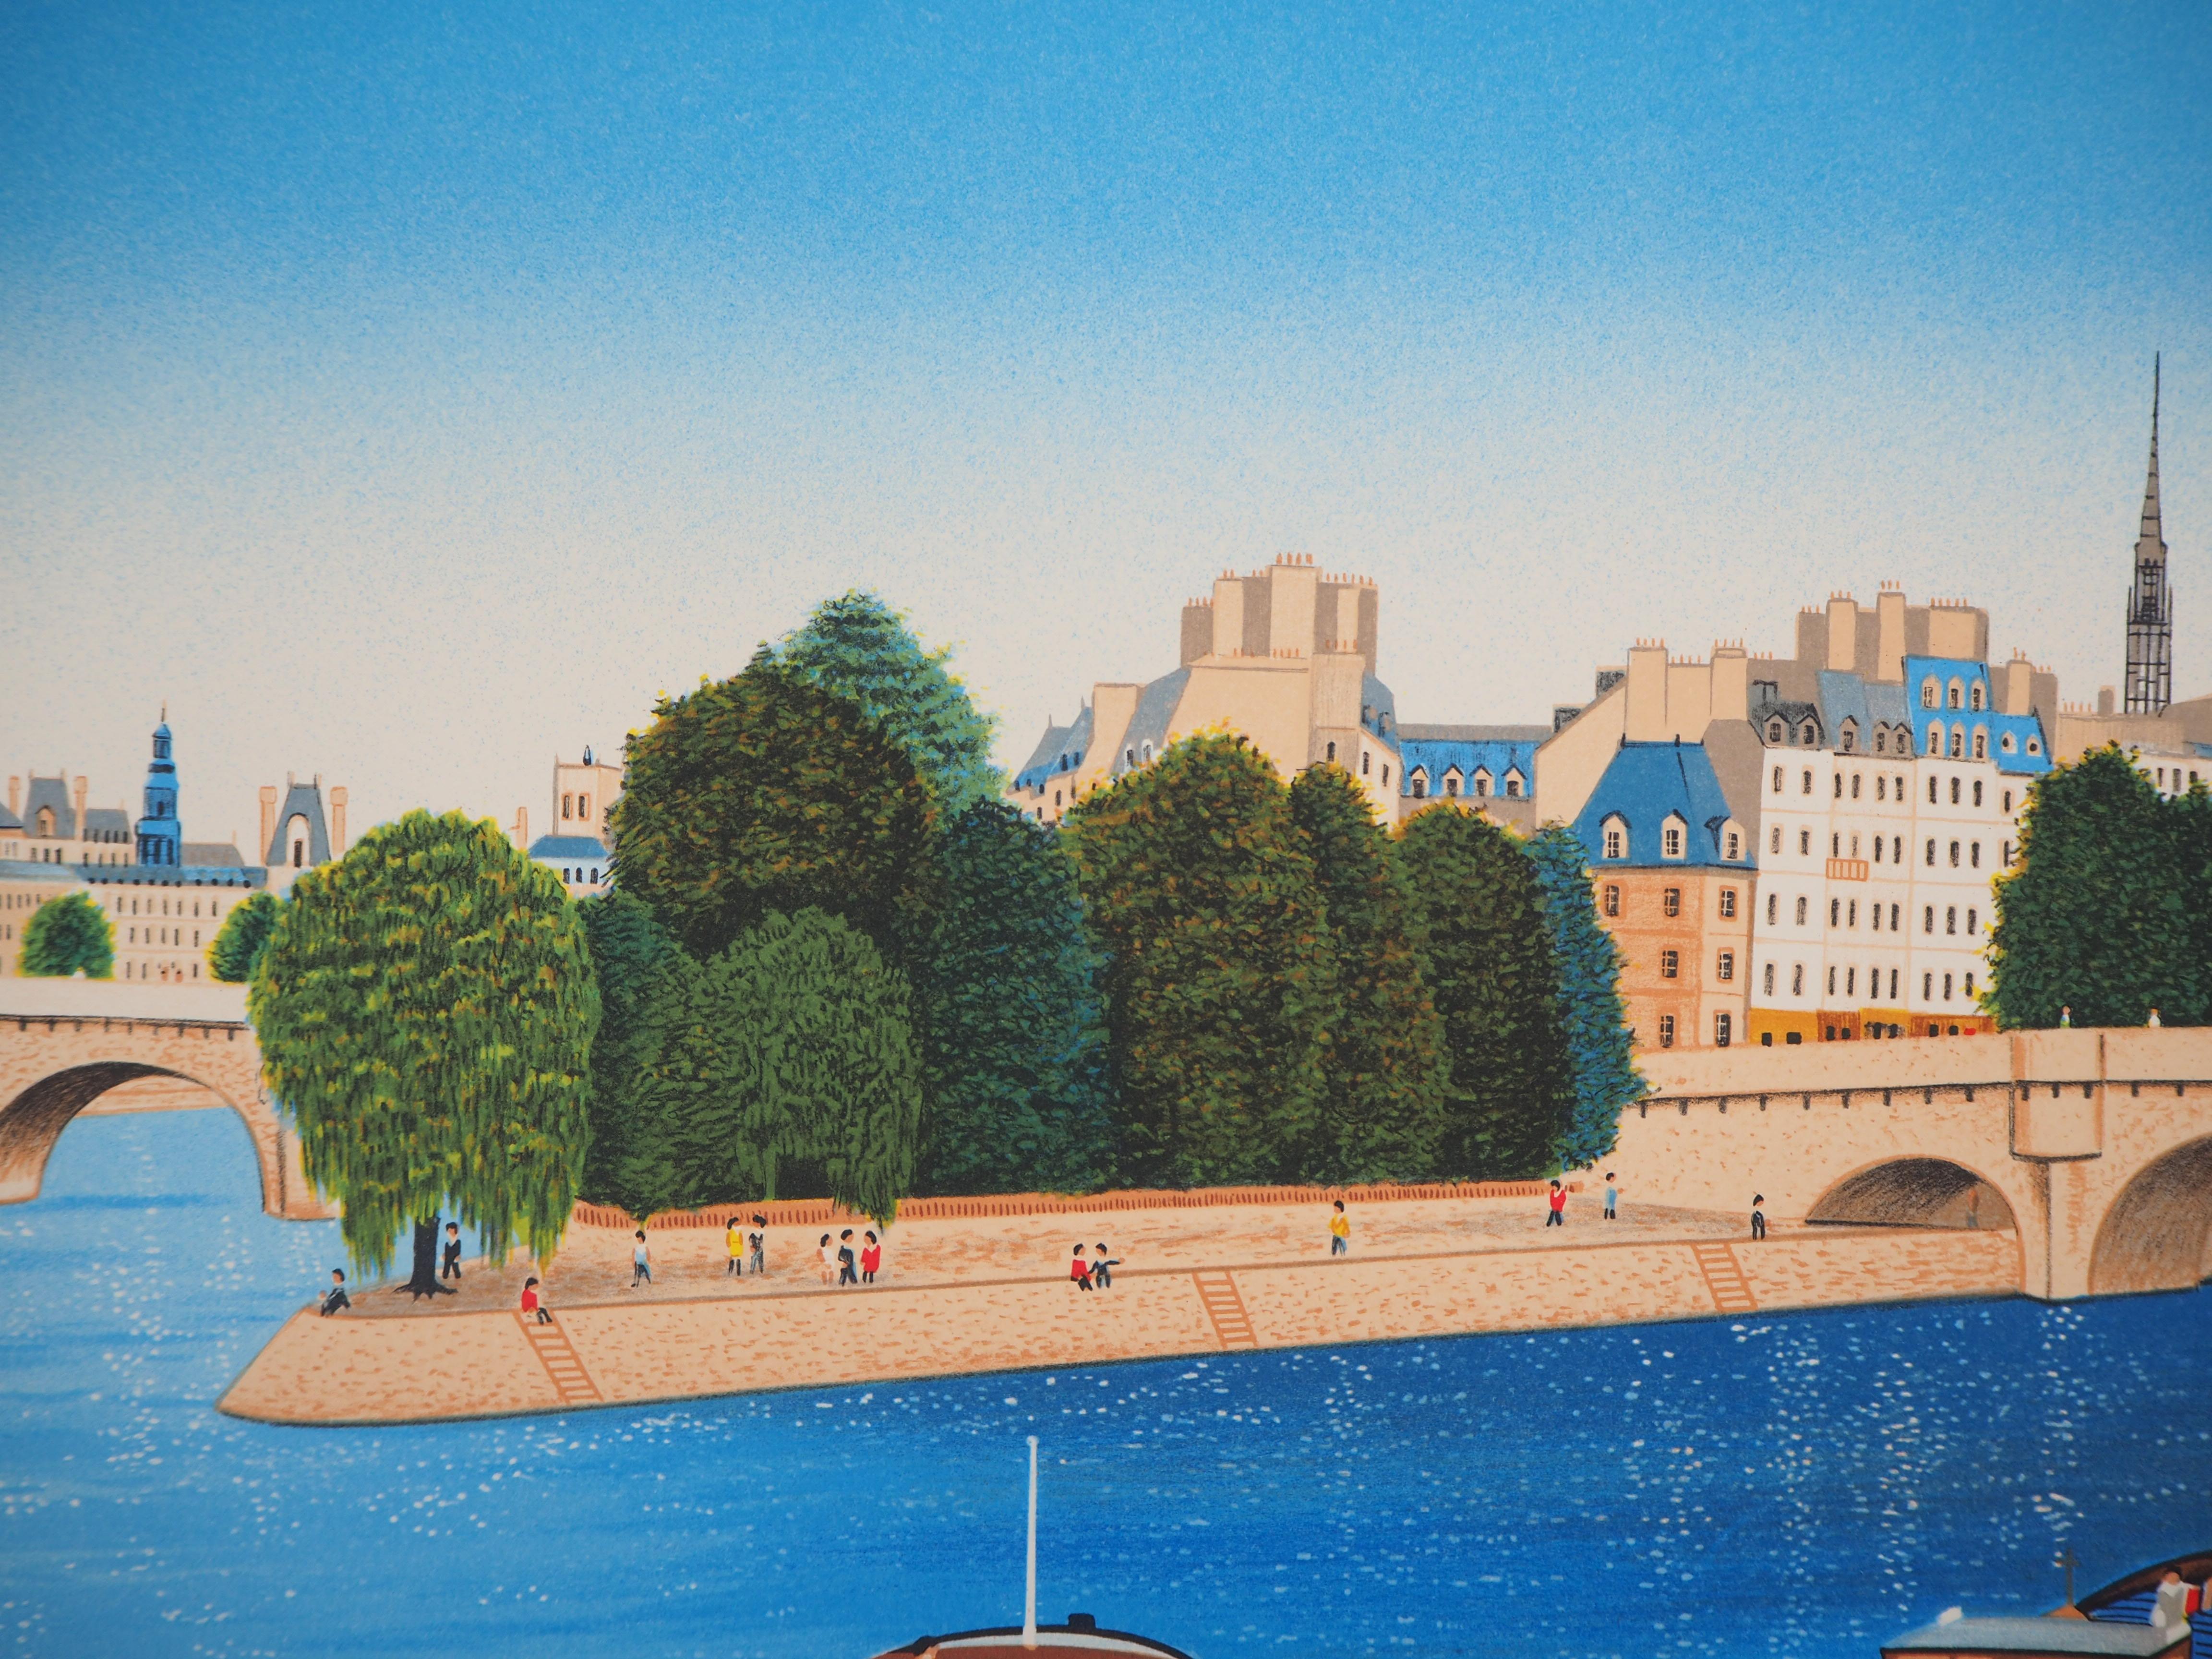 Paris, Ile Saint Louis : Seine River, Boats and Notre Dame - Original lithograph - Modern Print by Fanch (Francois Ledan)